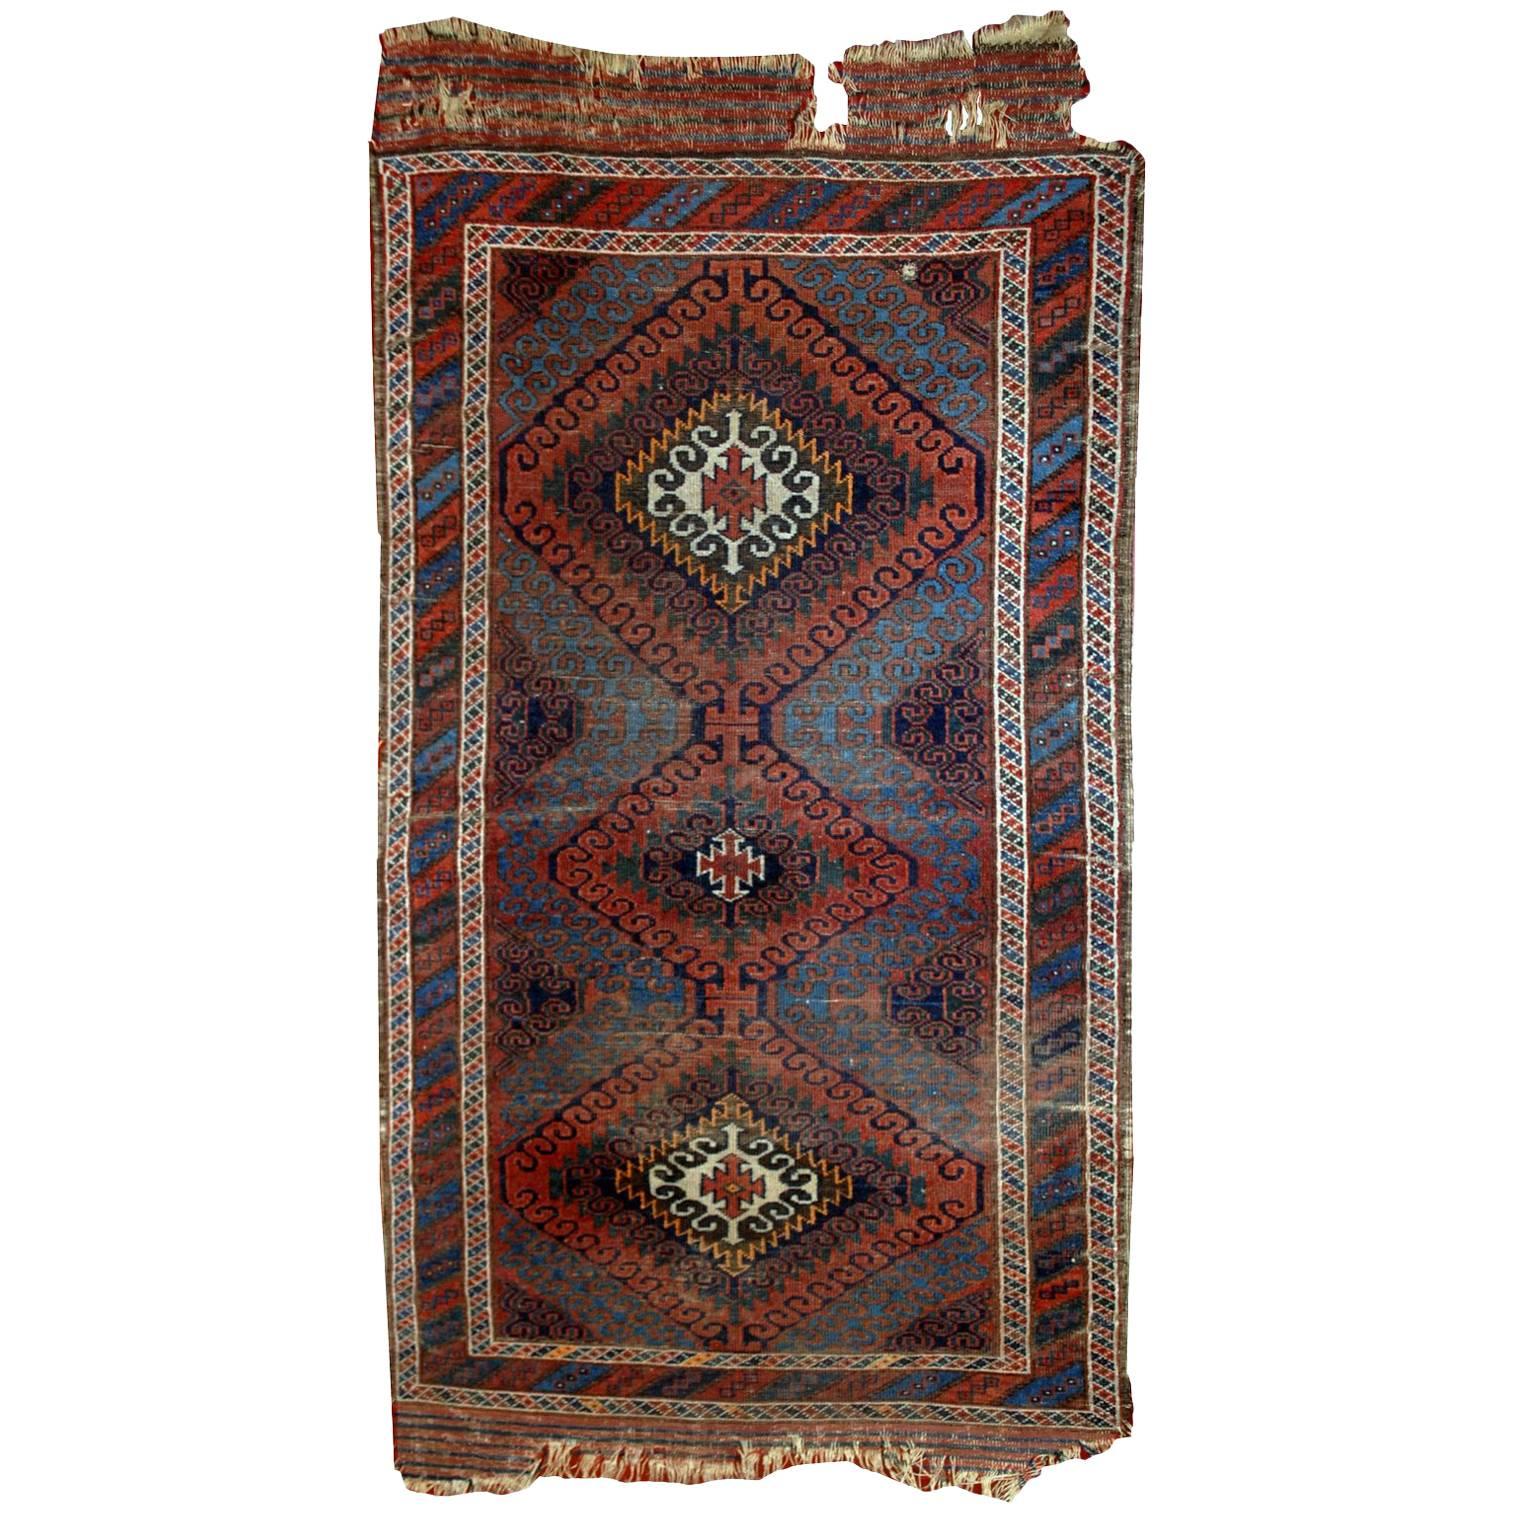 Tapis baluch afghan de collection fait à la main, années 1900, 1E02